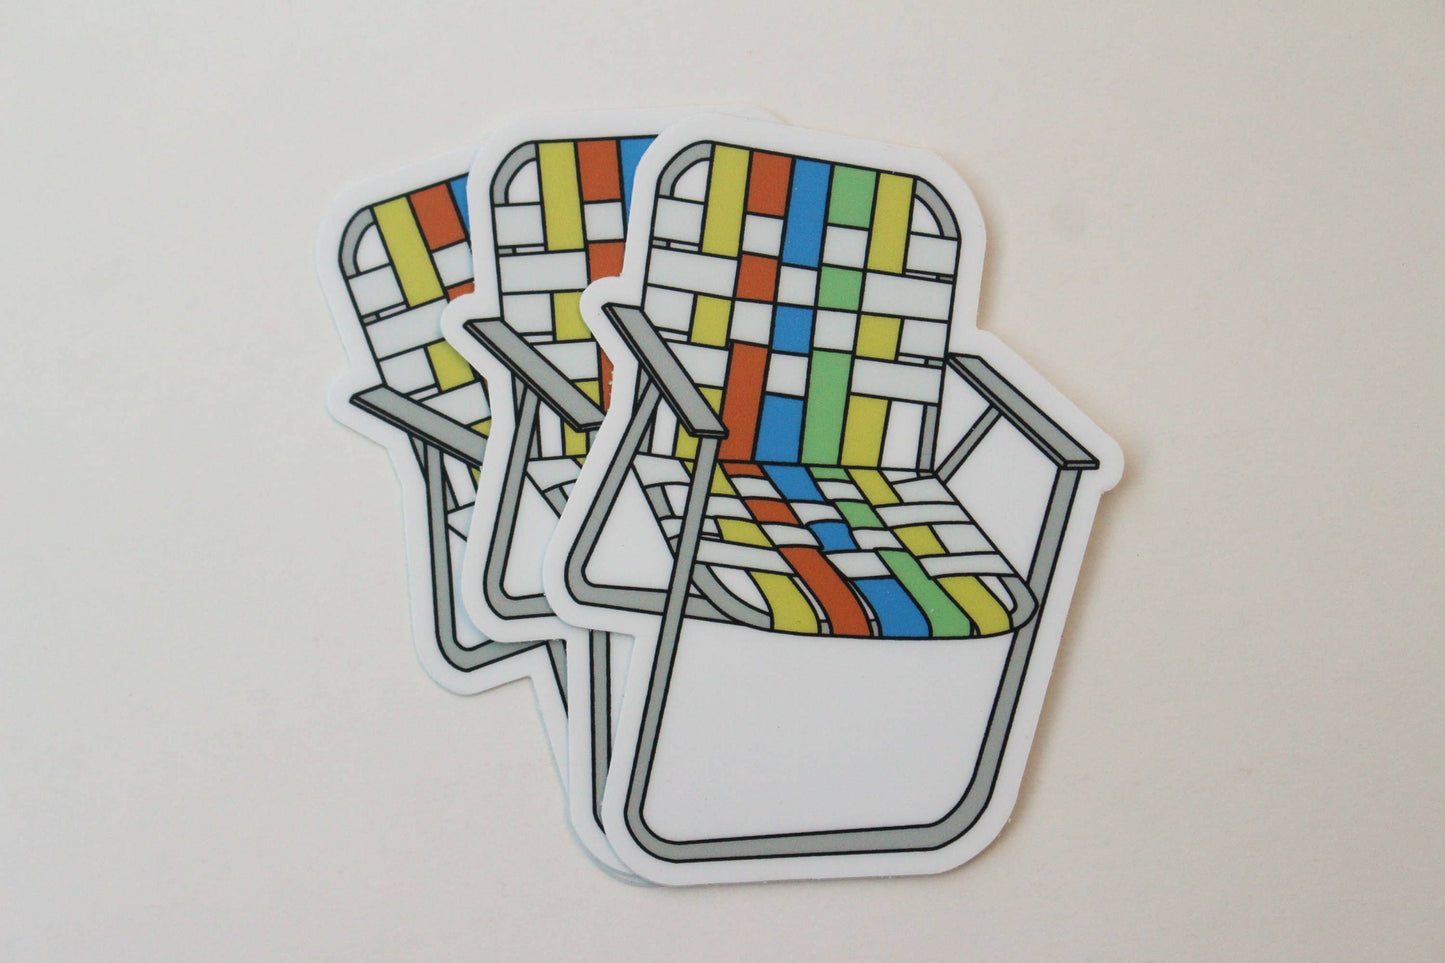 Vintage Aluminum Lawn Chair Magnet - Multicolor